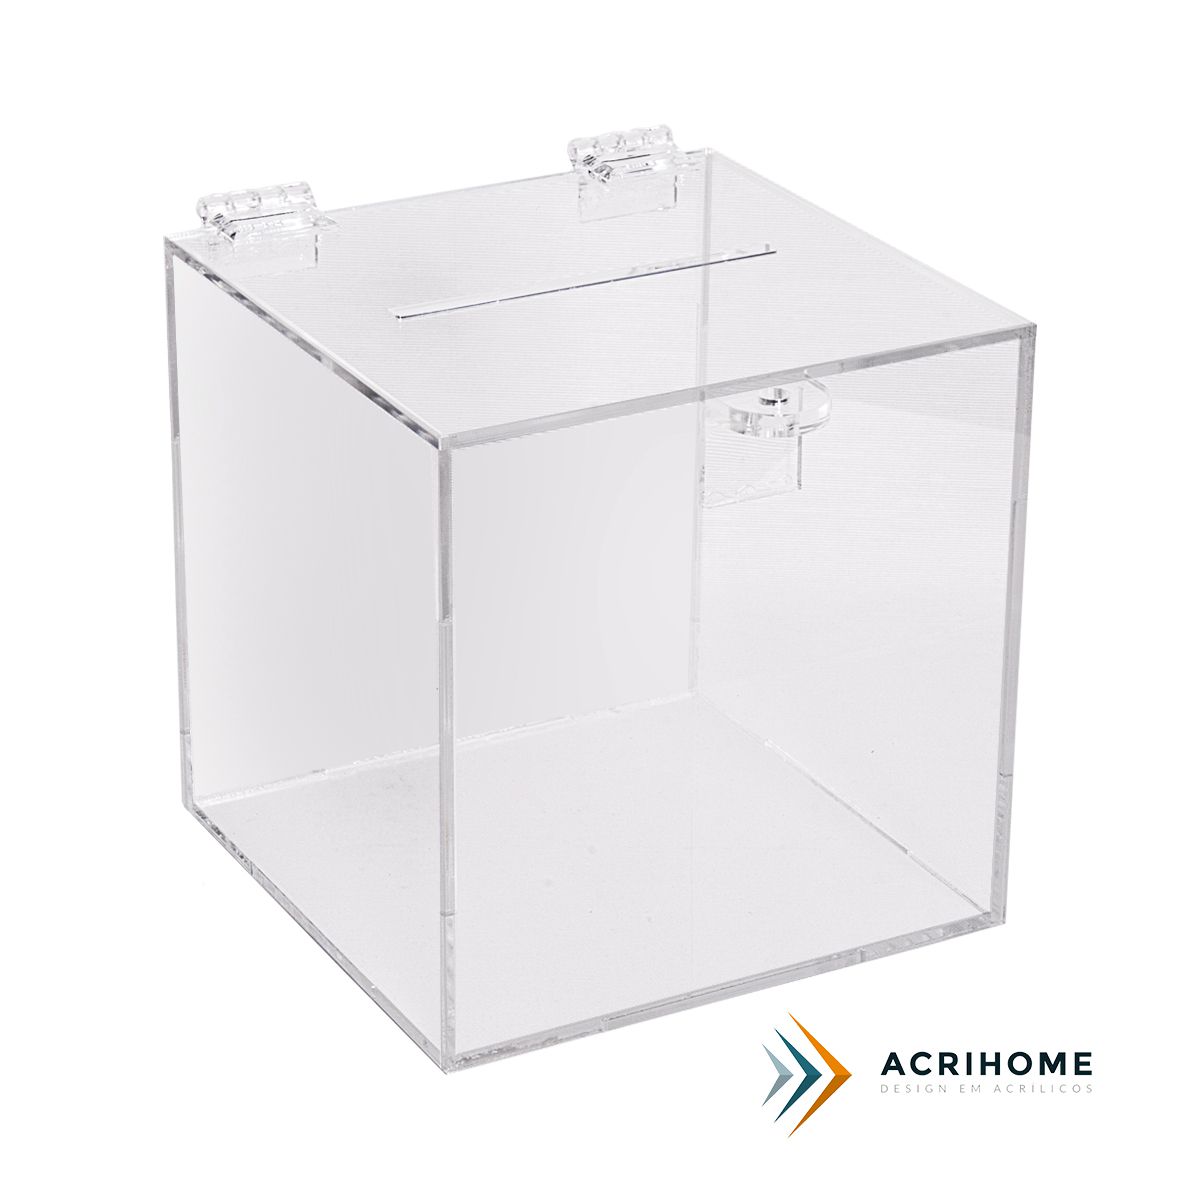 Urna de Acrílico Transparente - Melhor Preço | ACRIHOME - Acrihome Design  em Acrílicos